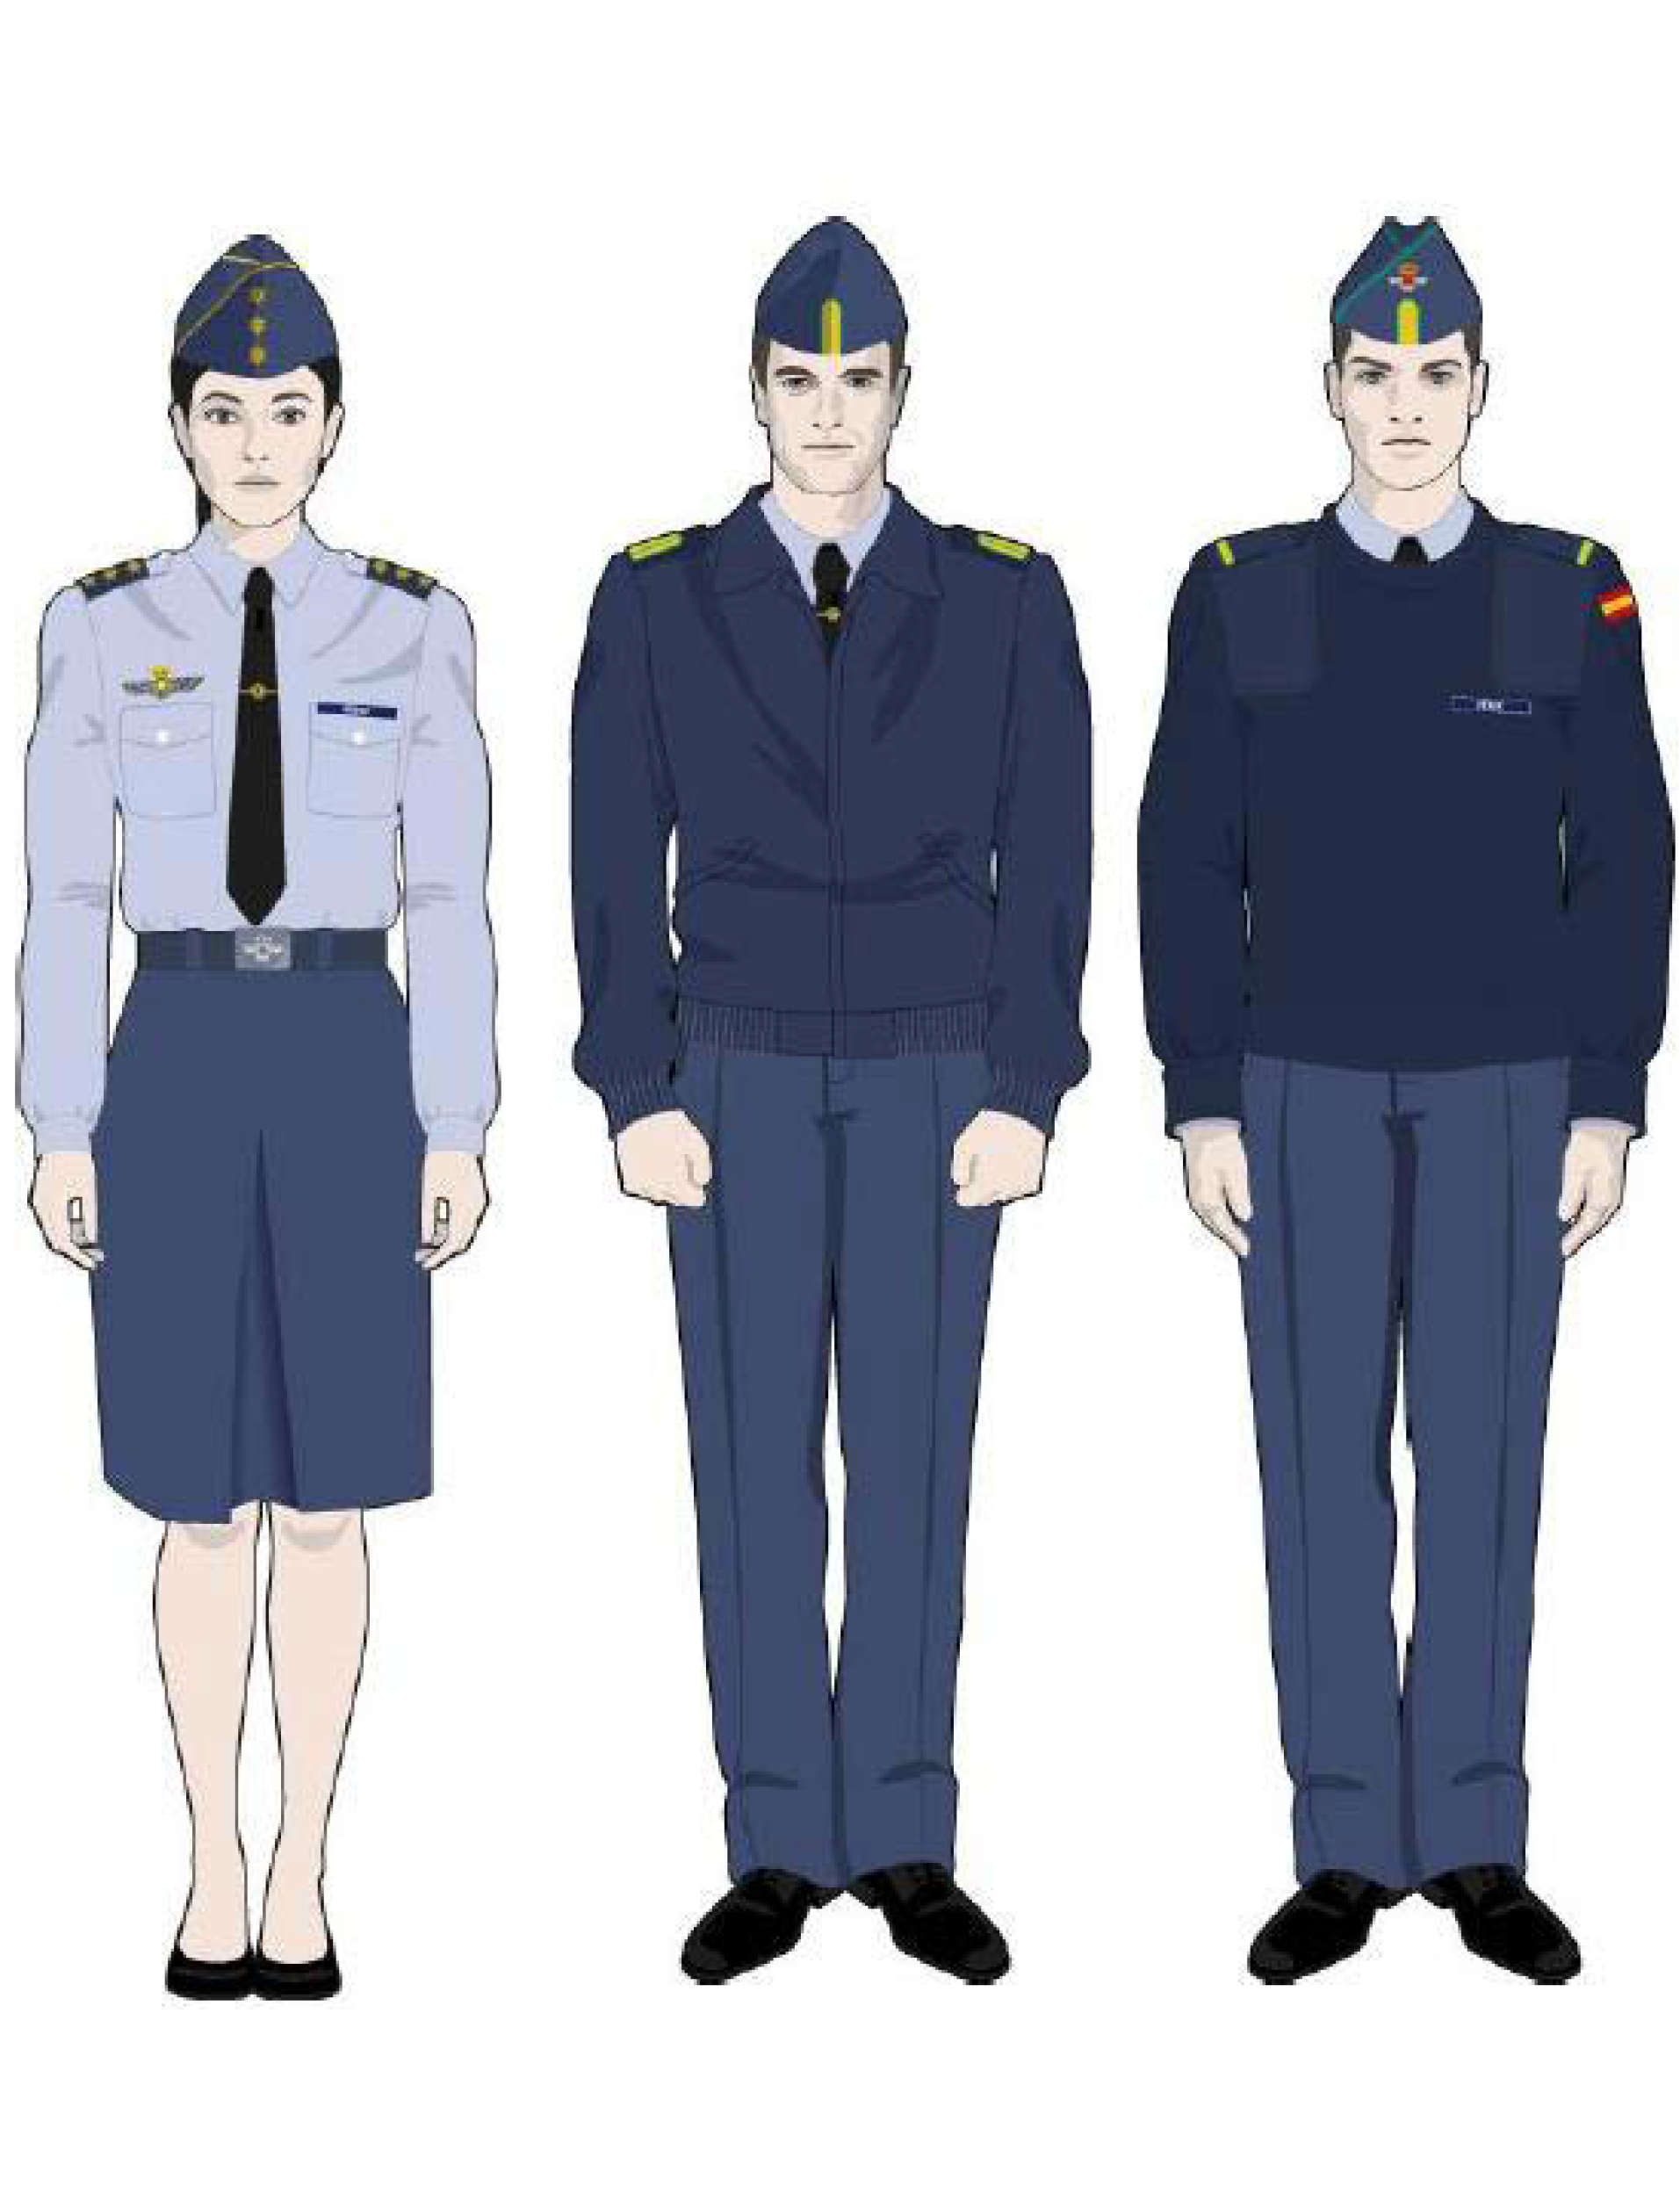 La evolución de los uniformes del Ejército Soviético